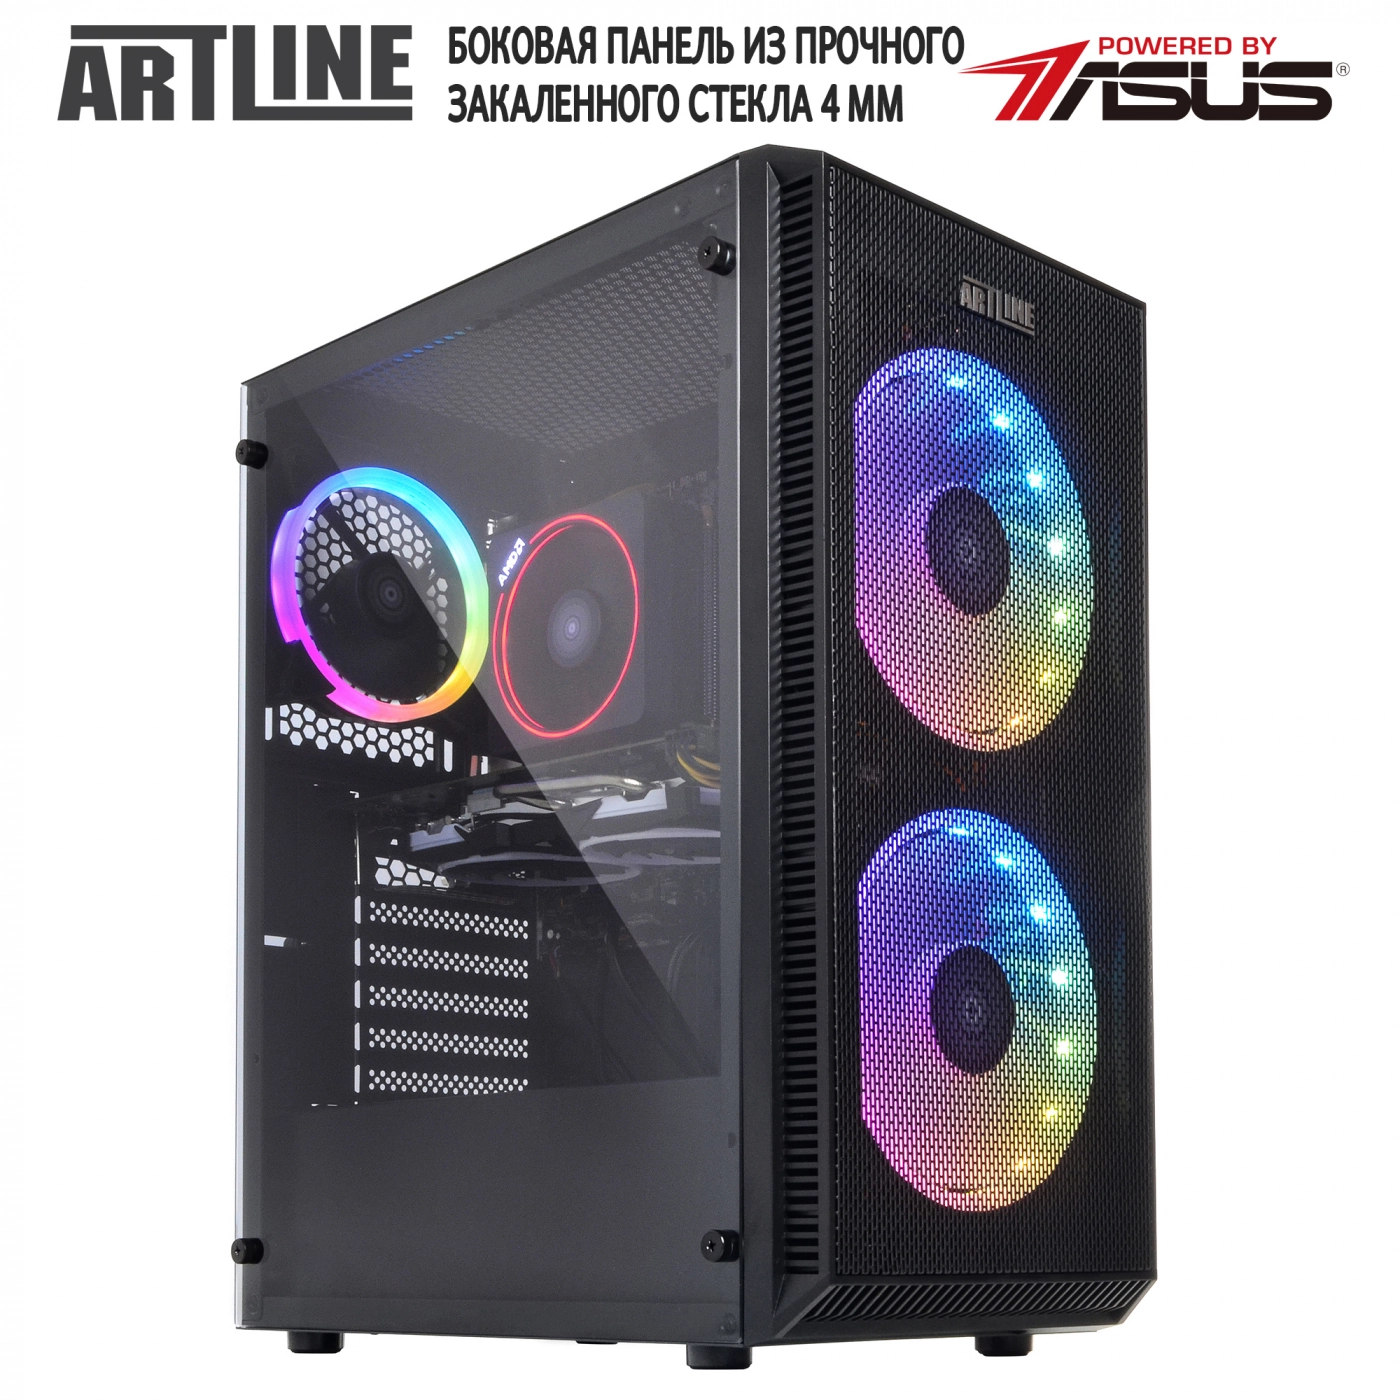 Купить Компьютер ARTLINE Gaming X61v10 - фото 8